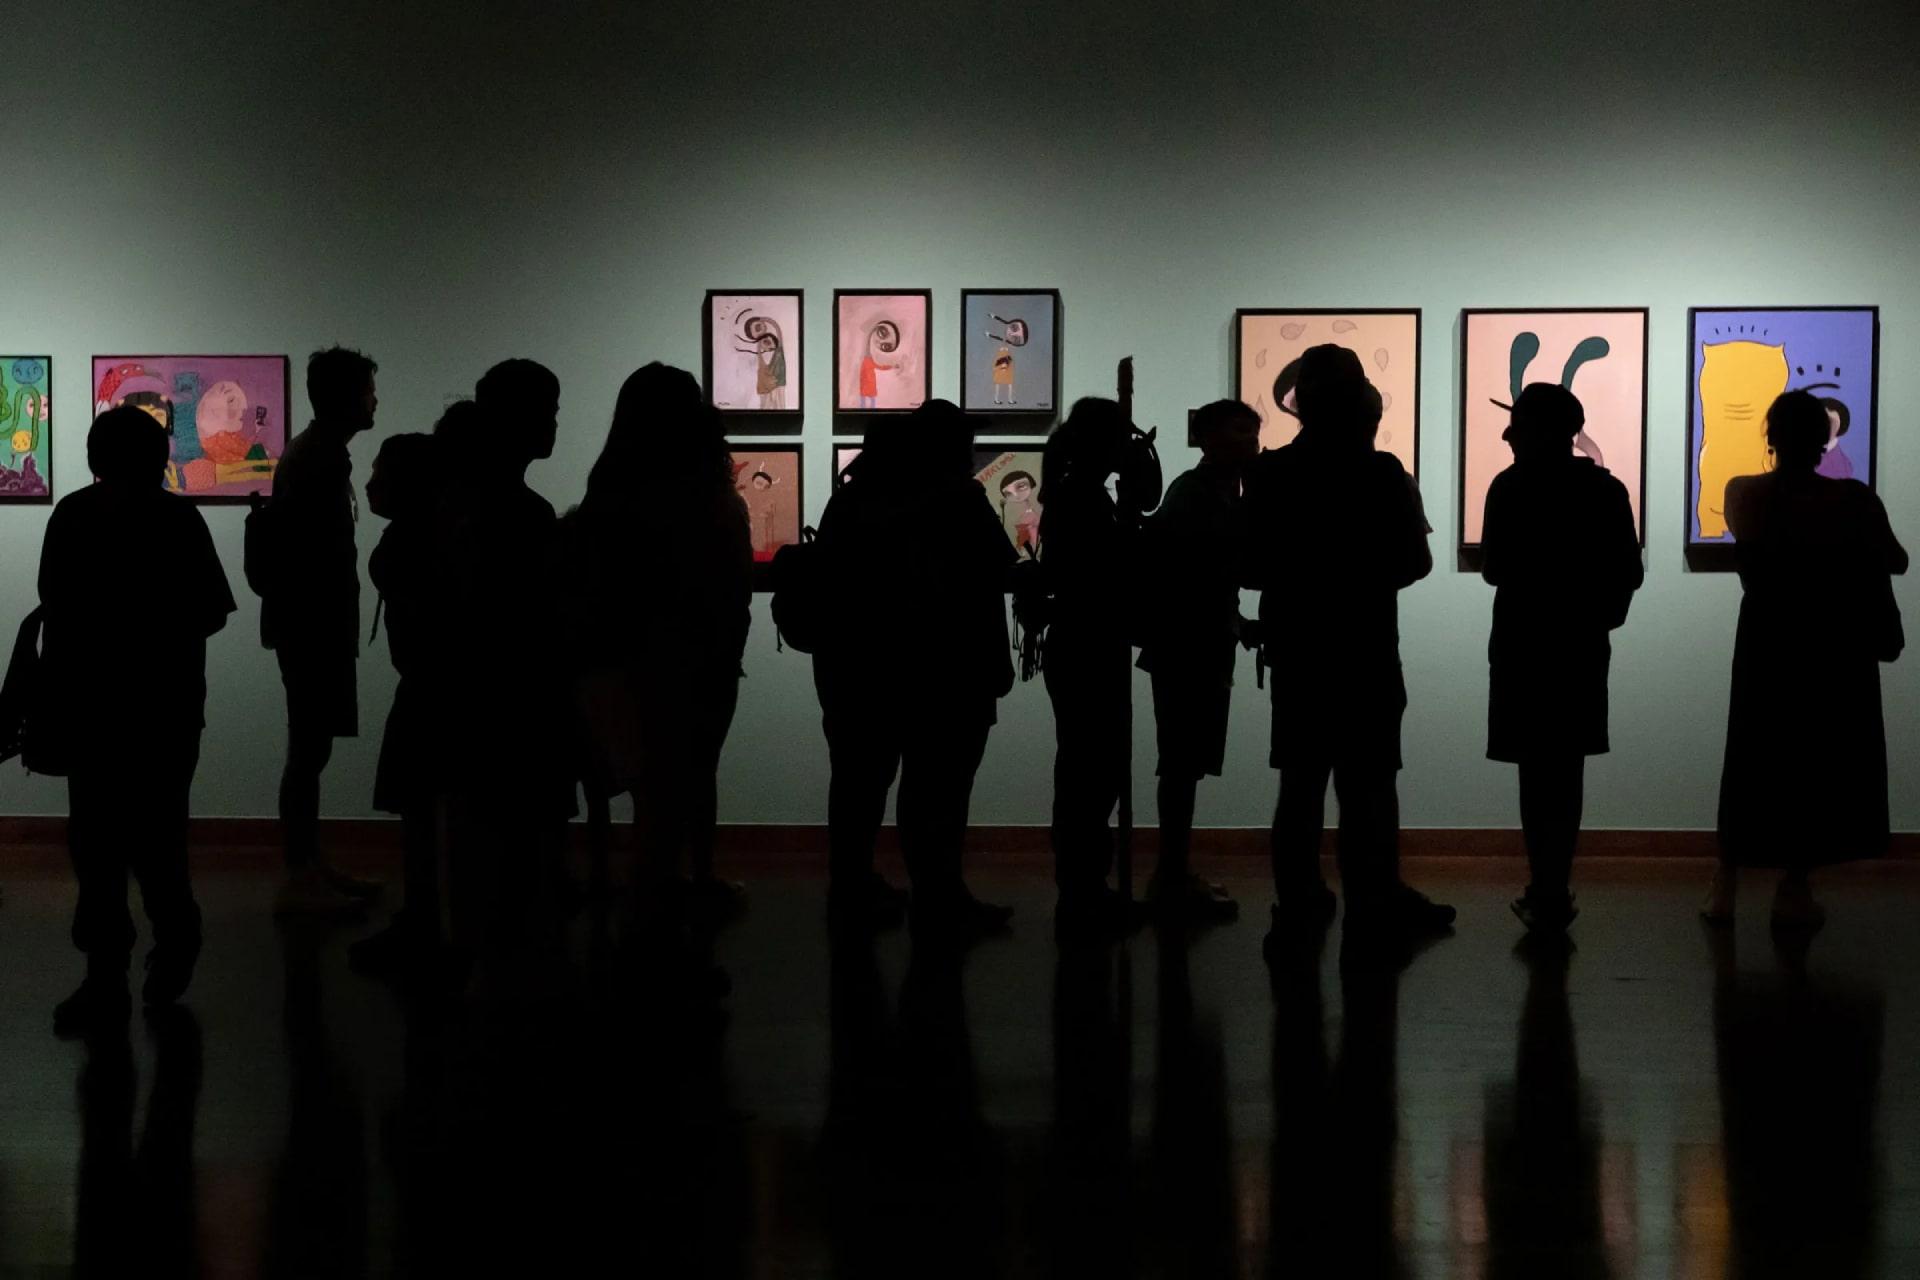 گروهی در حال تماشای تابلوهای نقاشی در گالری هنری